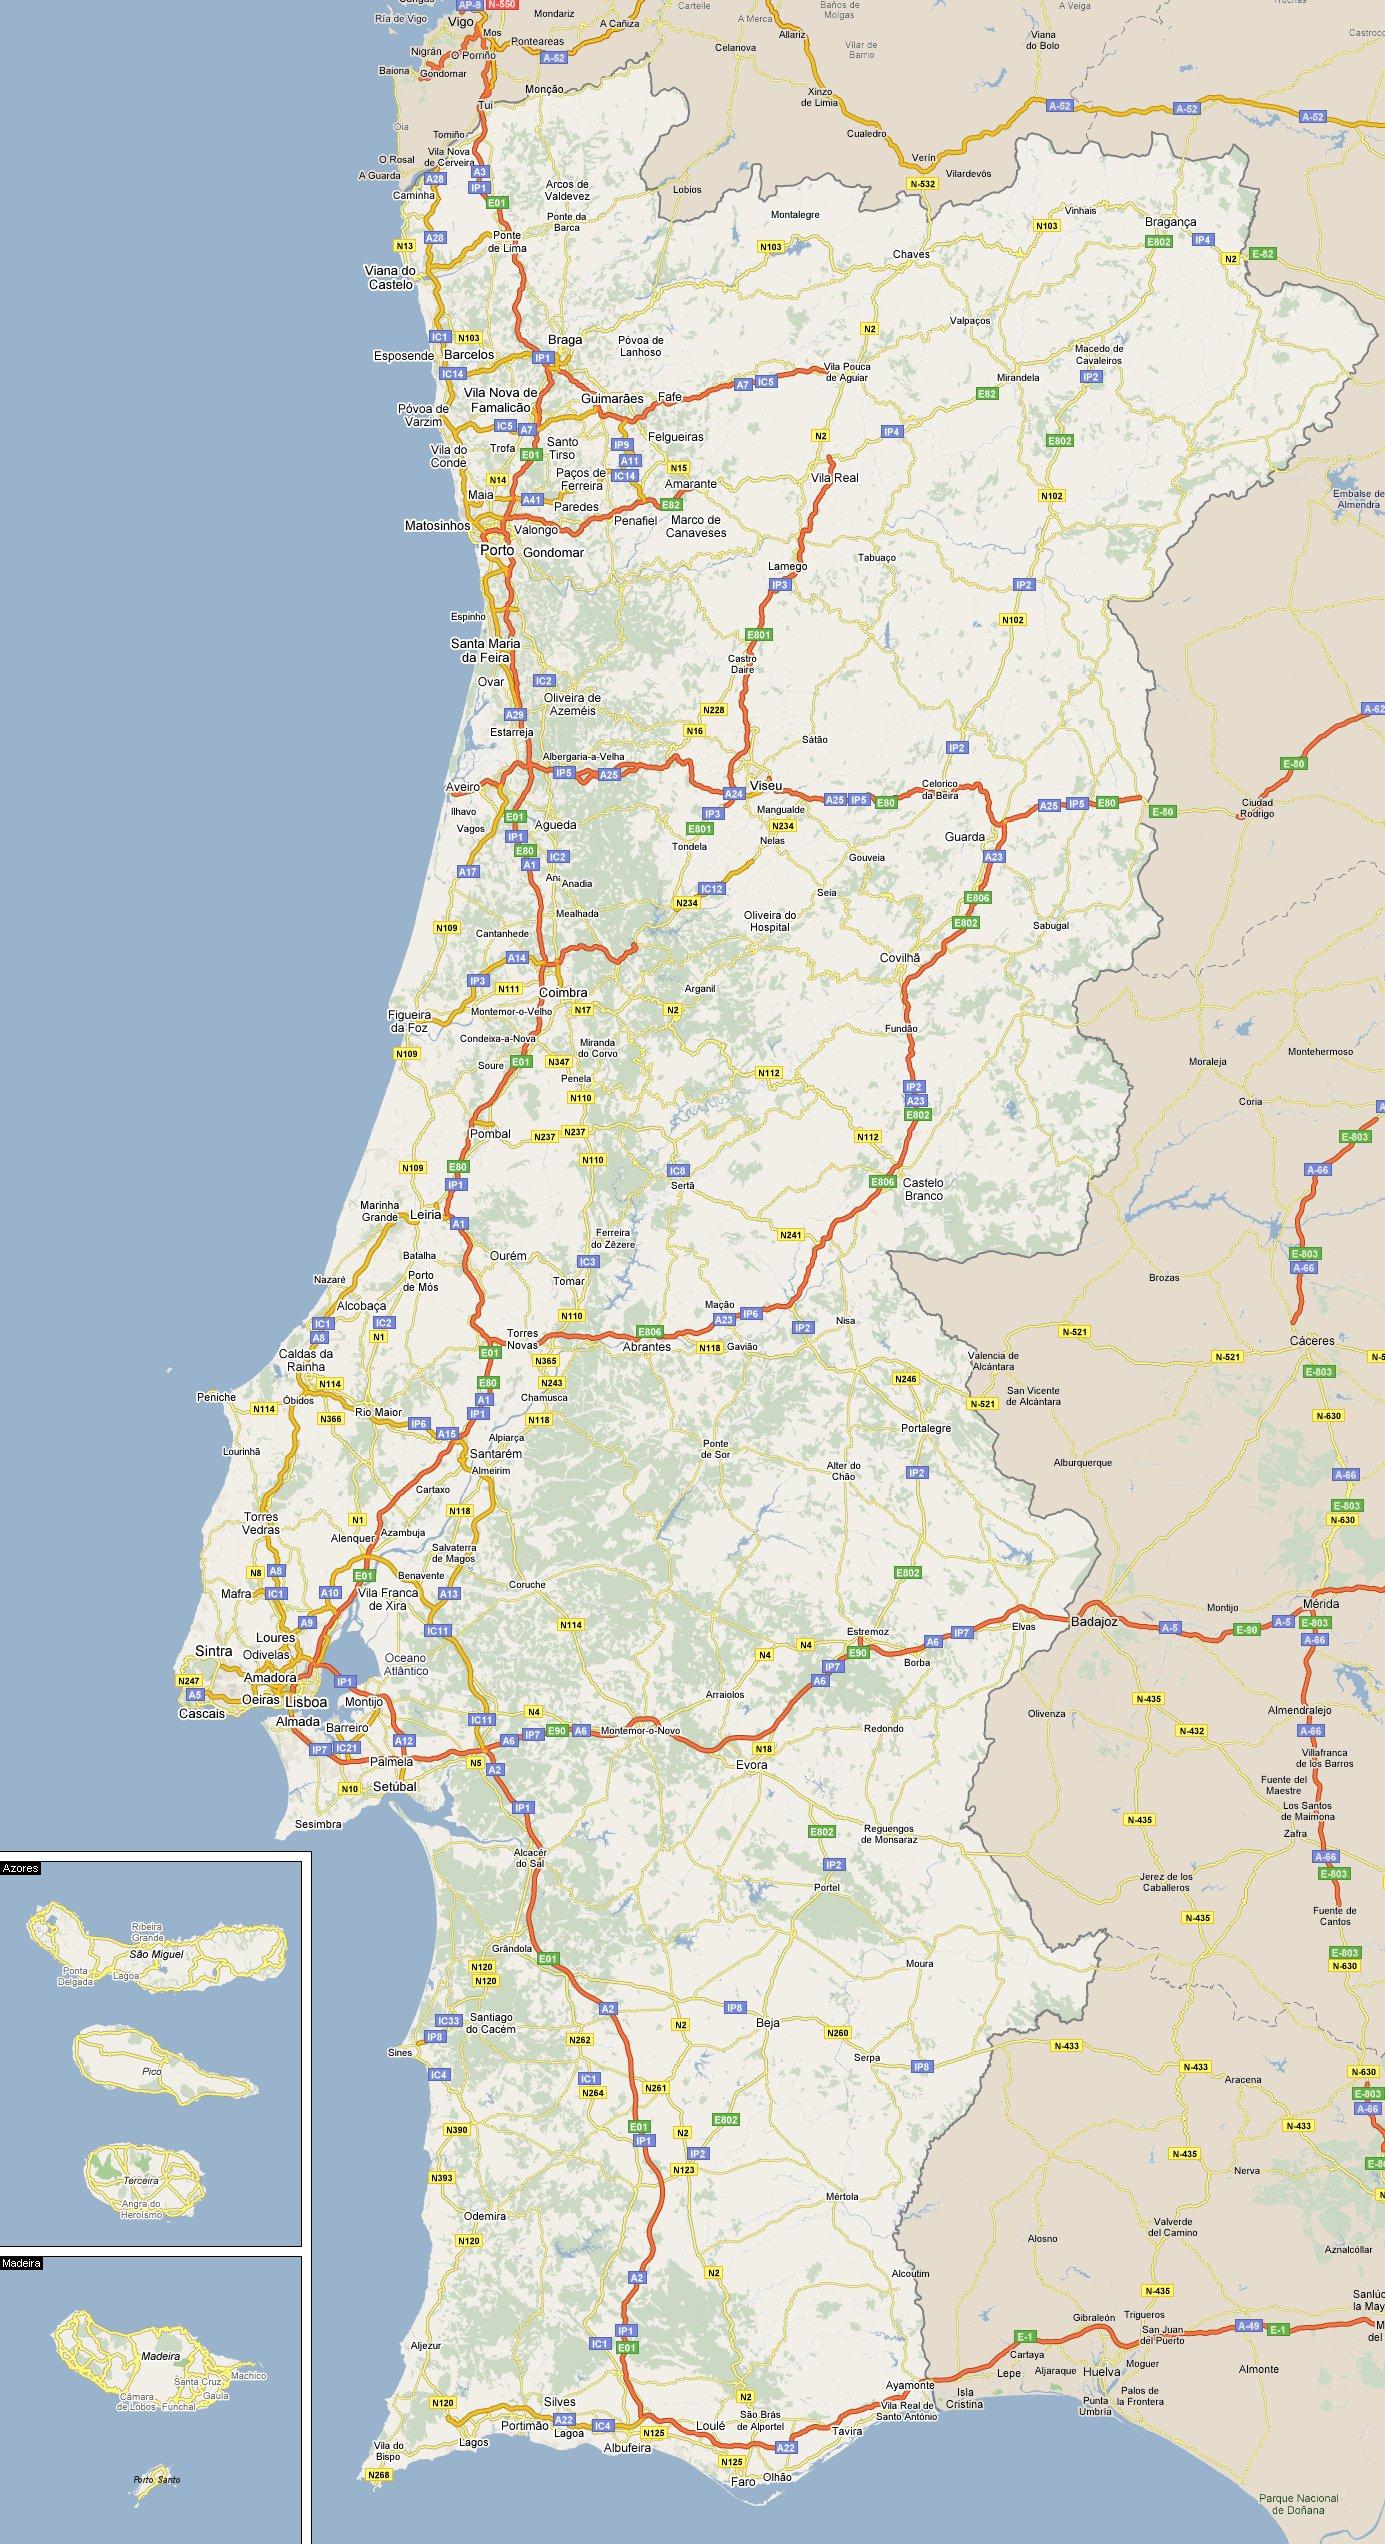 Mapa de Portugal - Mapa detalhado de Portugal (Sul da Europa - Europa)